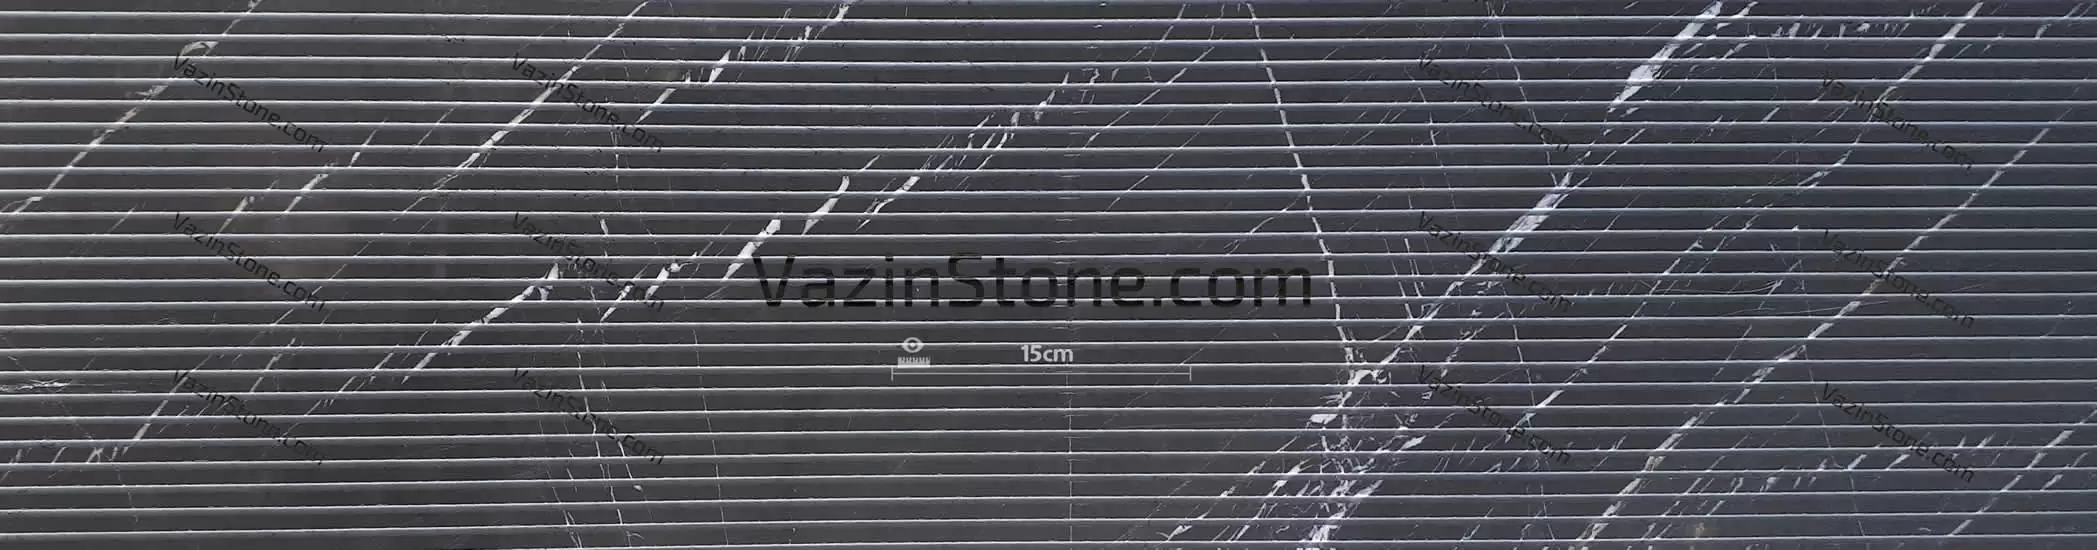 pietra grey cut - black with white streaks stone